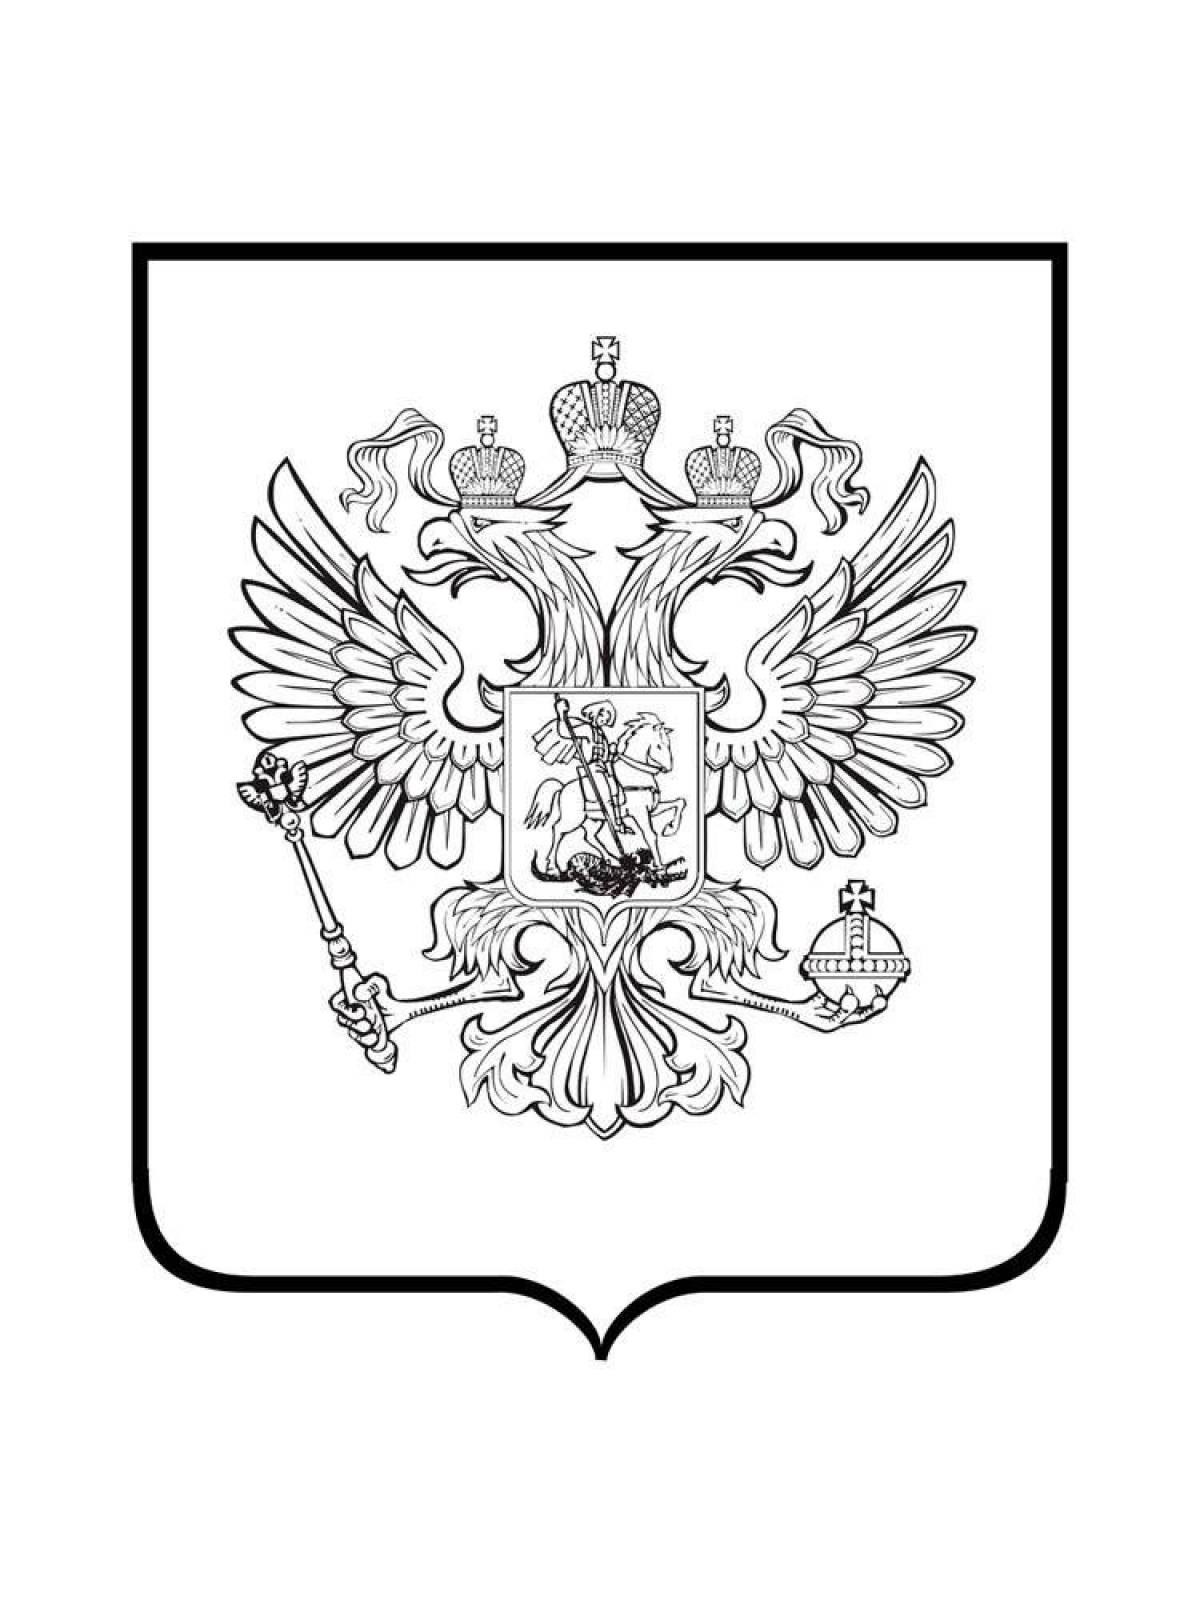 Сказочный герб россии для самых маленьких